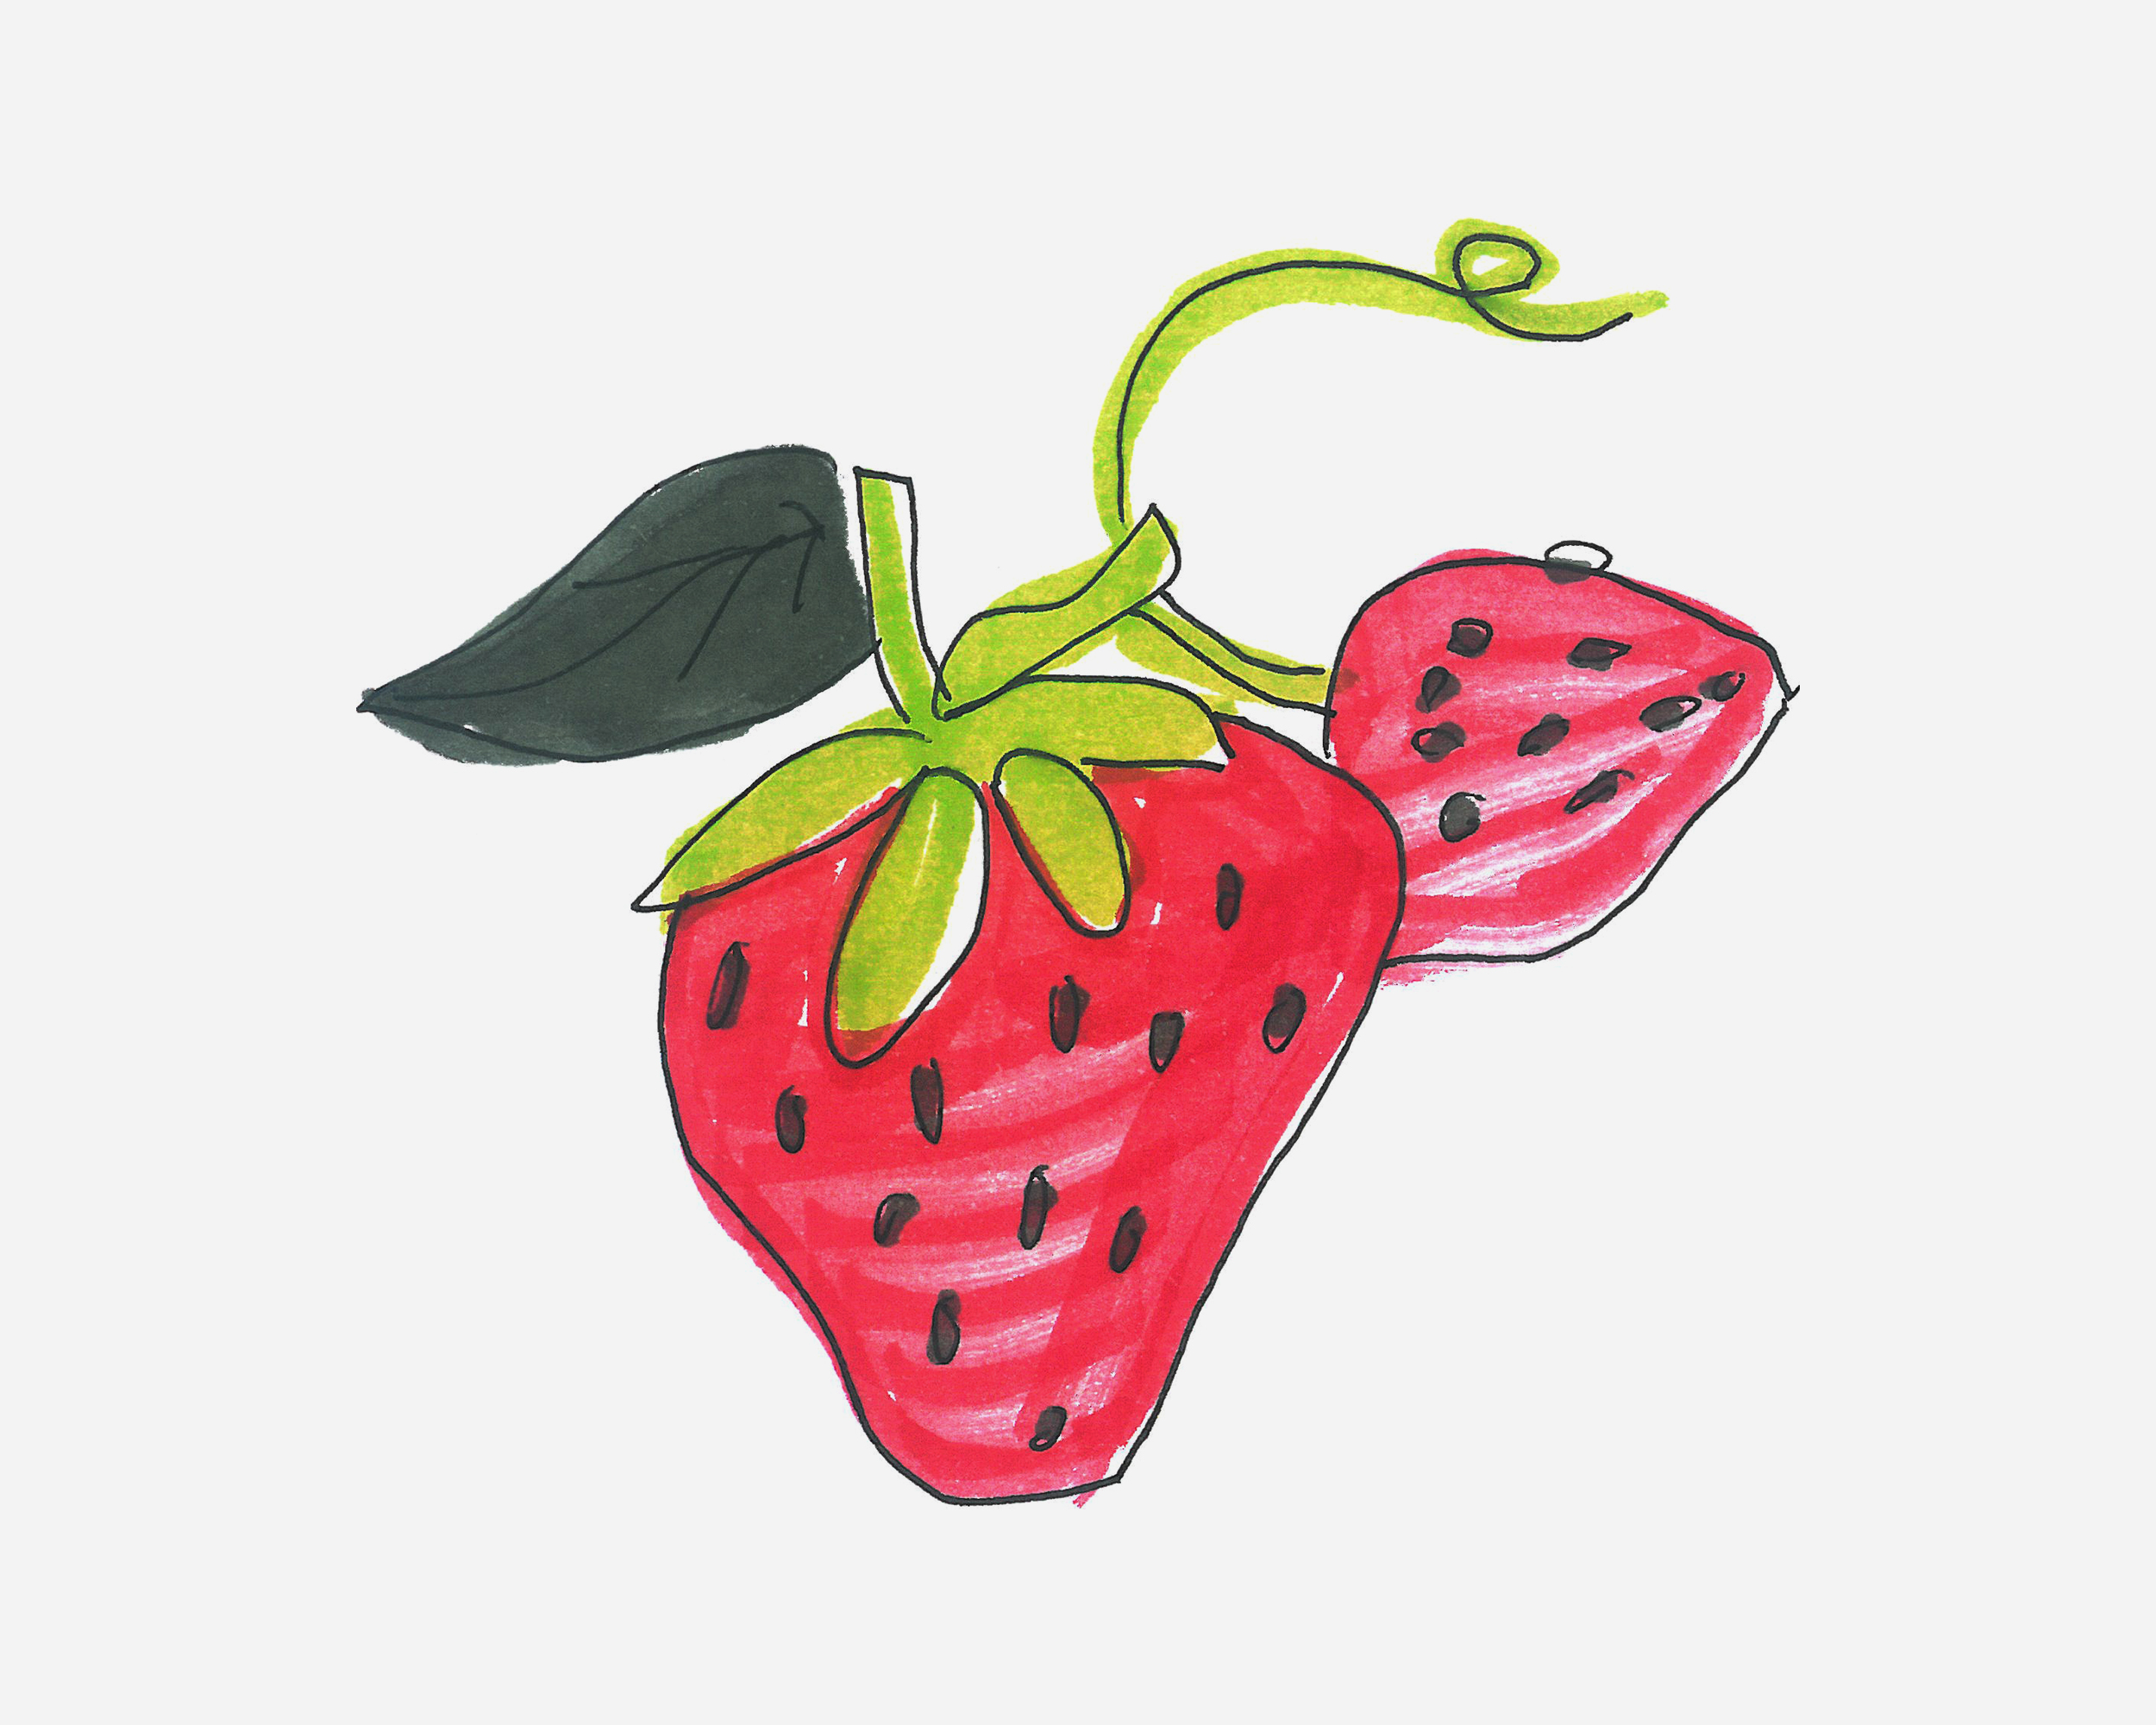 简单草莓简笔画画法图片步骤💛巧艺网